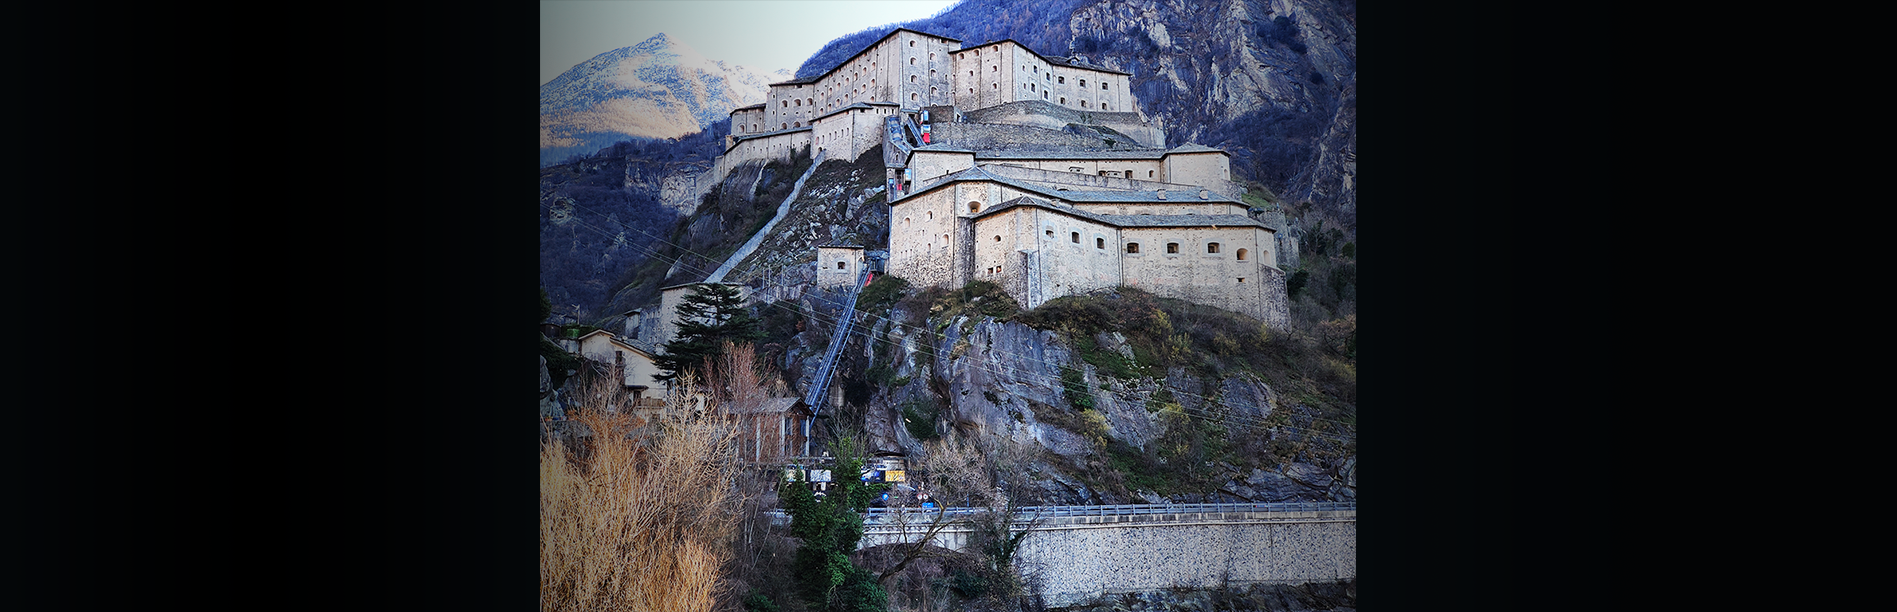 Forte di Bard Aosta, copertina